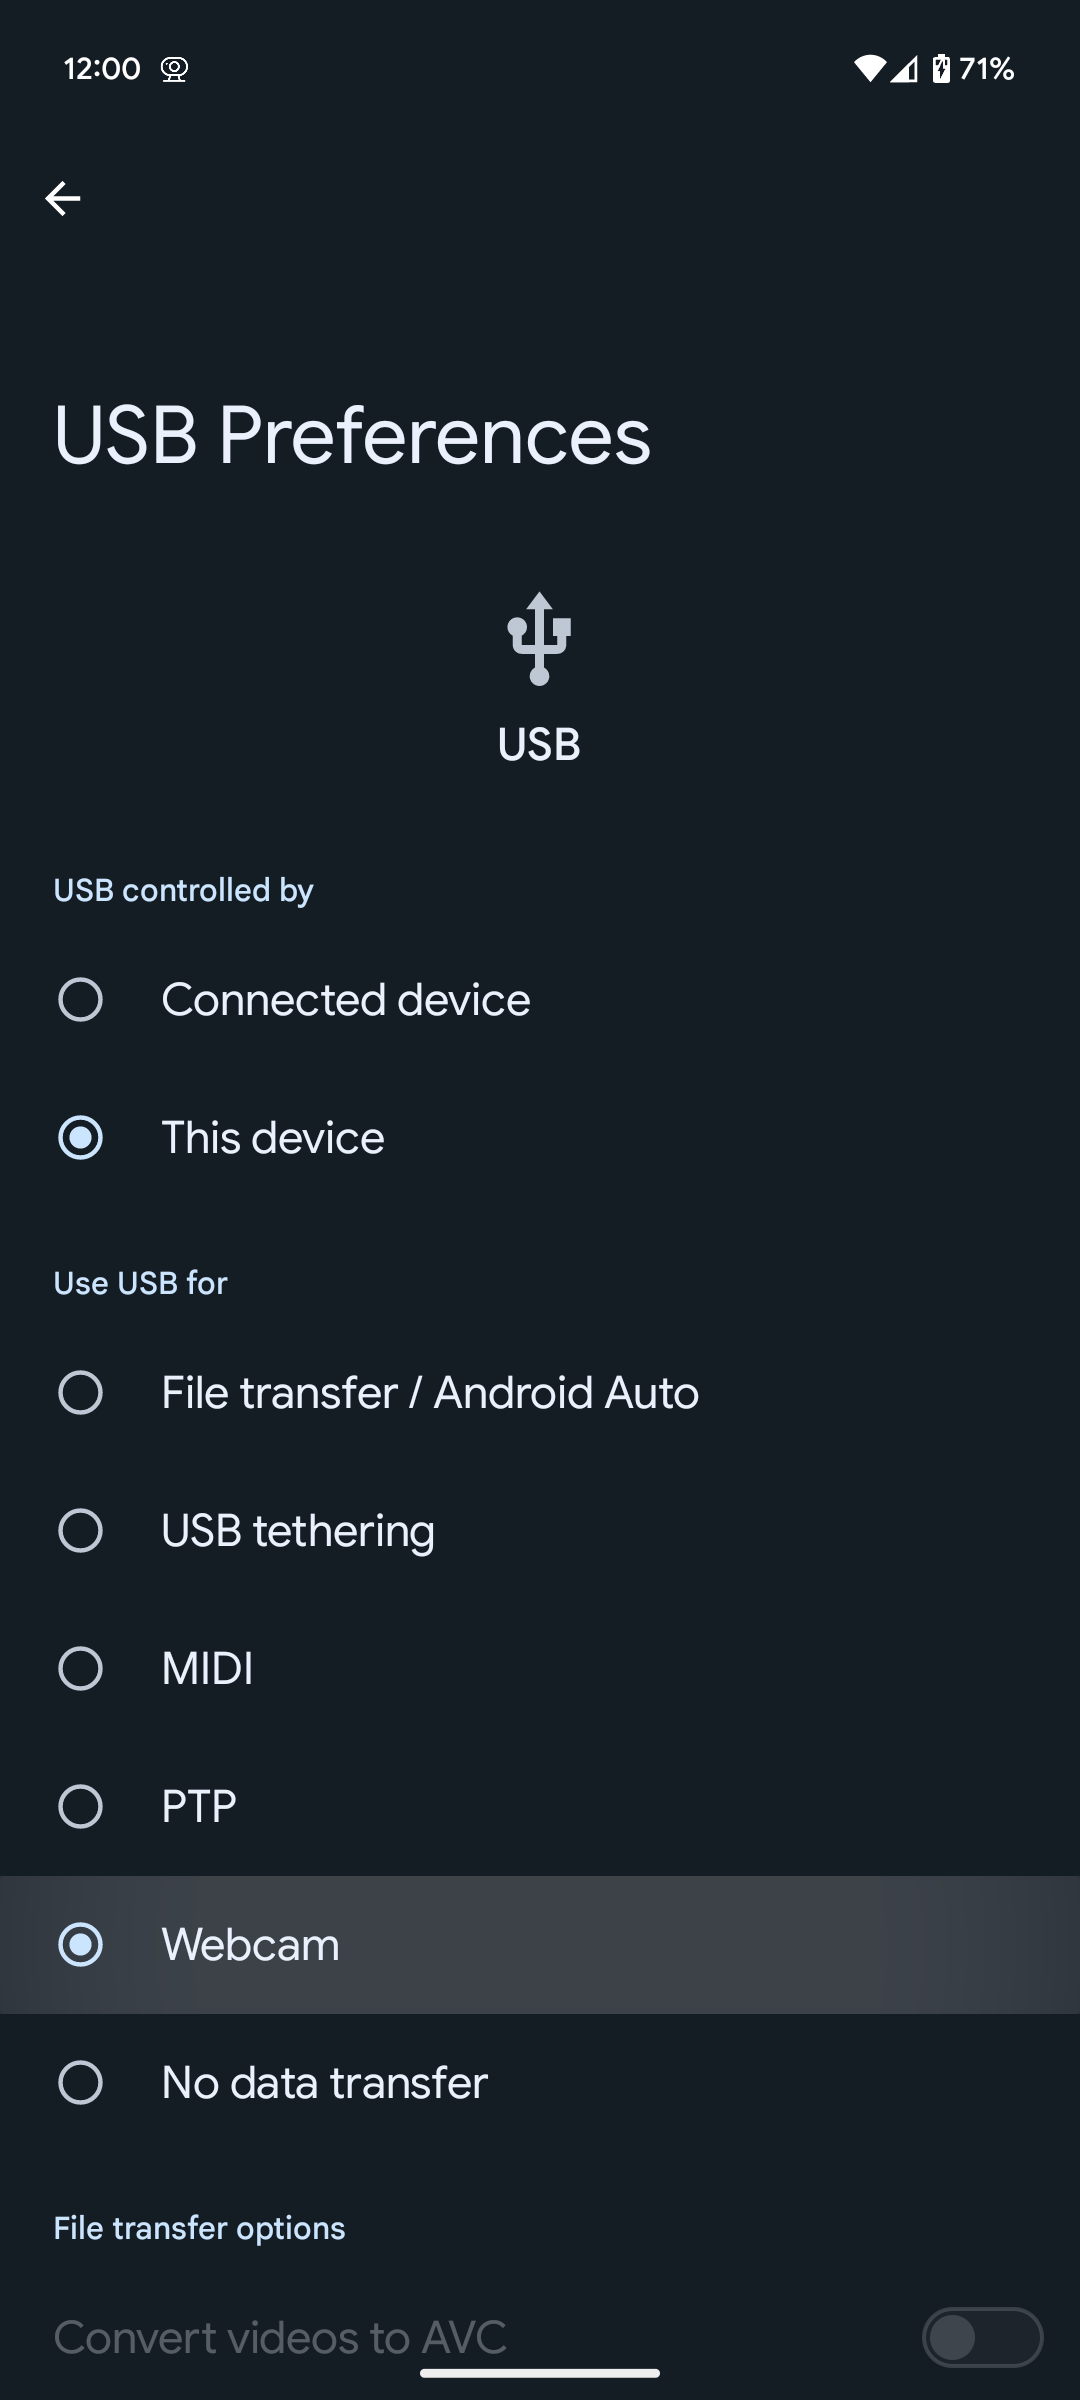 Captura de tela das preferências USB do Android 14 QPR1, com a nova opção de webcam em destaque